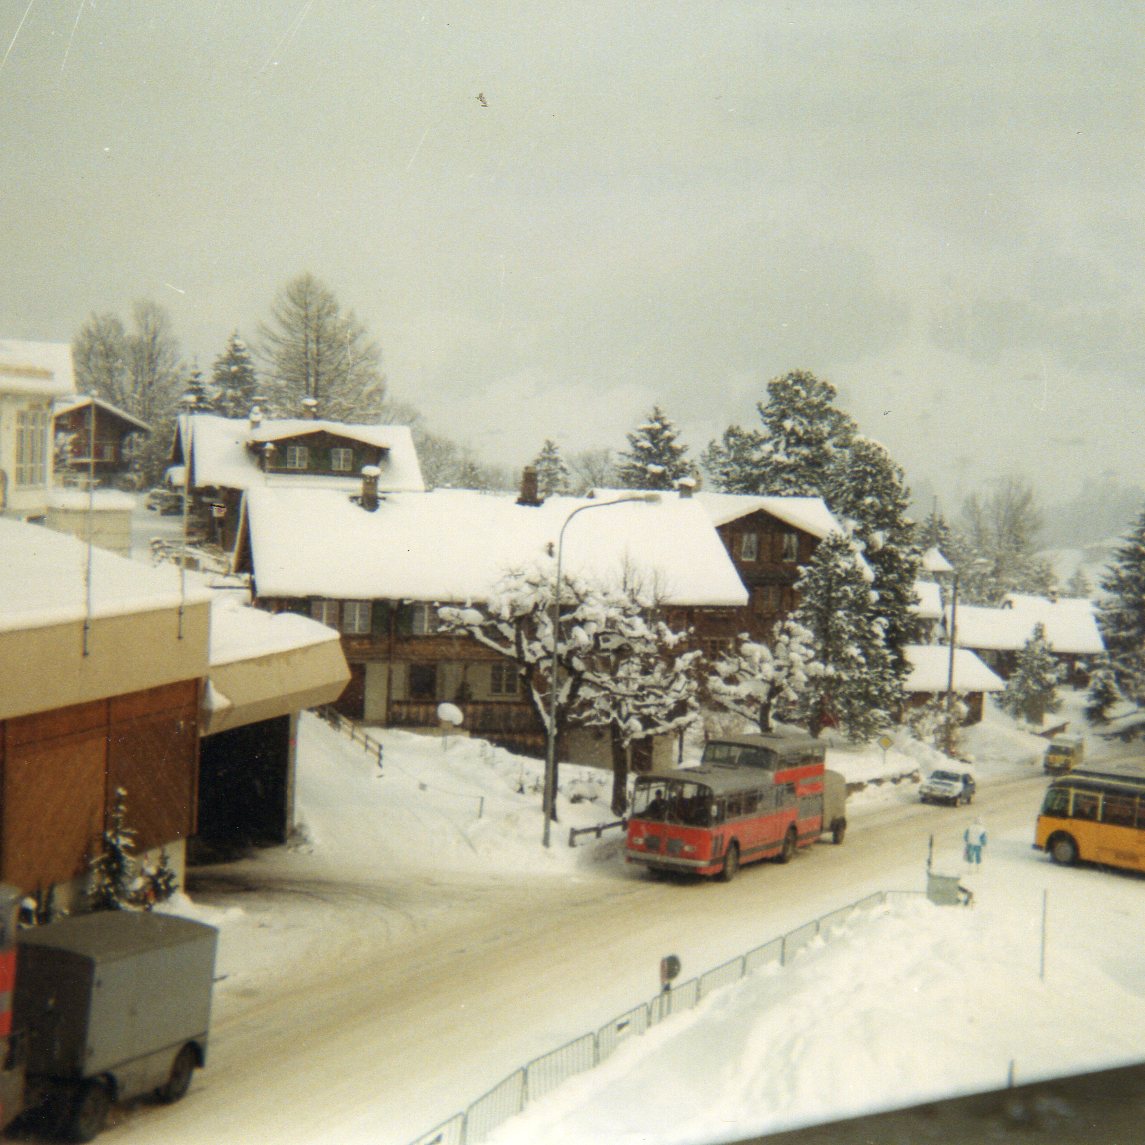 (7-03) - Aus dem Archiv: AFA Adelboden - Nr. 7/BE 26'707 - FBW/Vetter-R&J Anderthalbdecker im Februar 1988 in Adelboden, Landstrasse